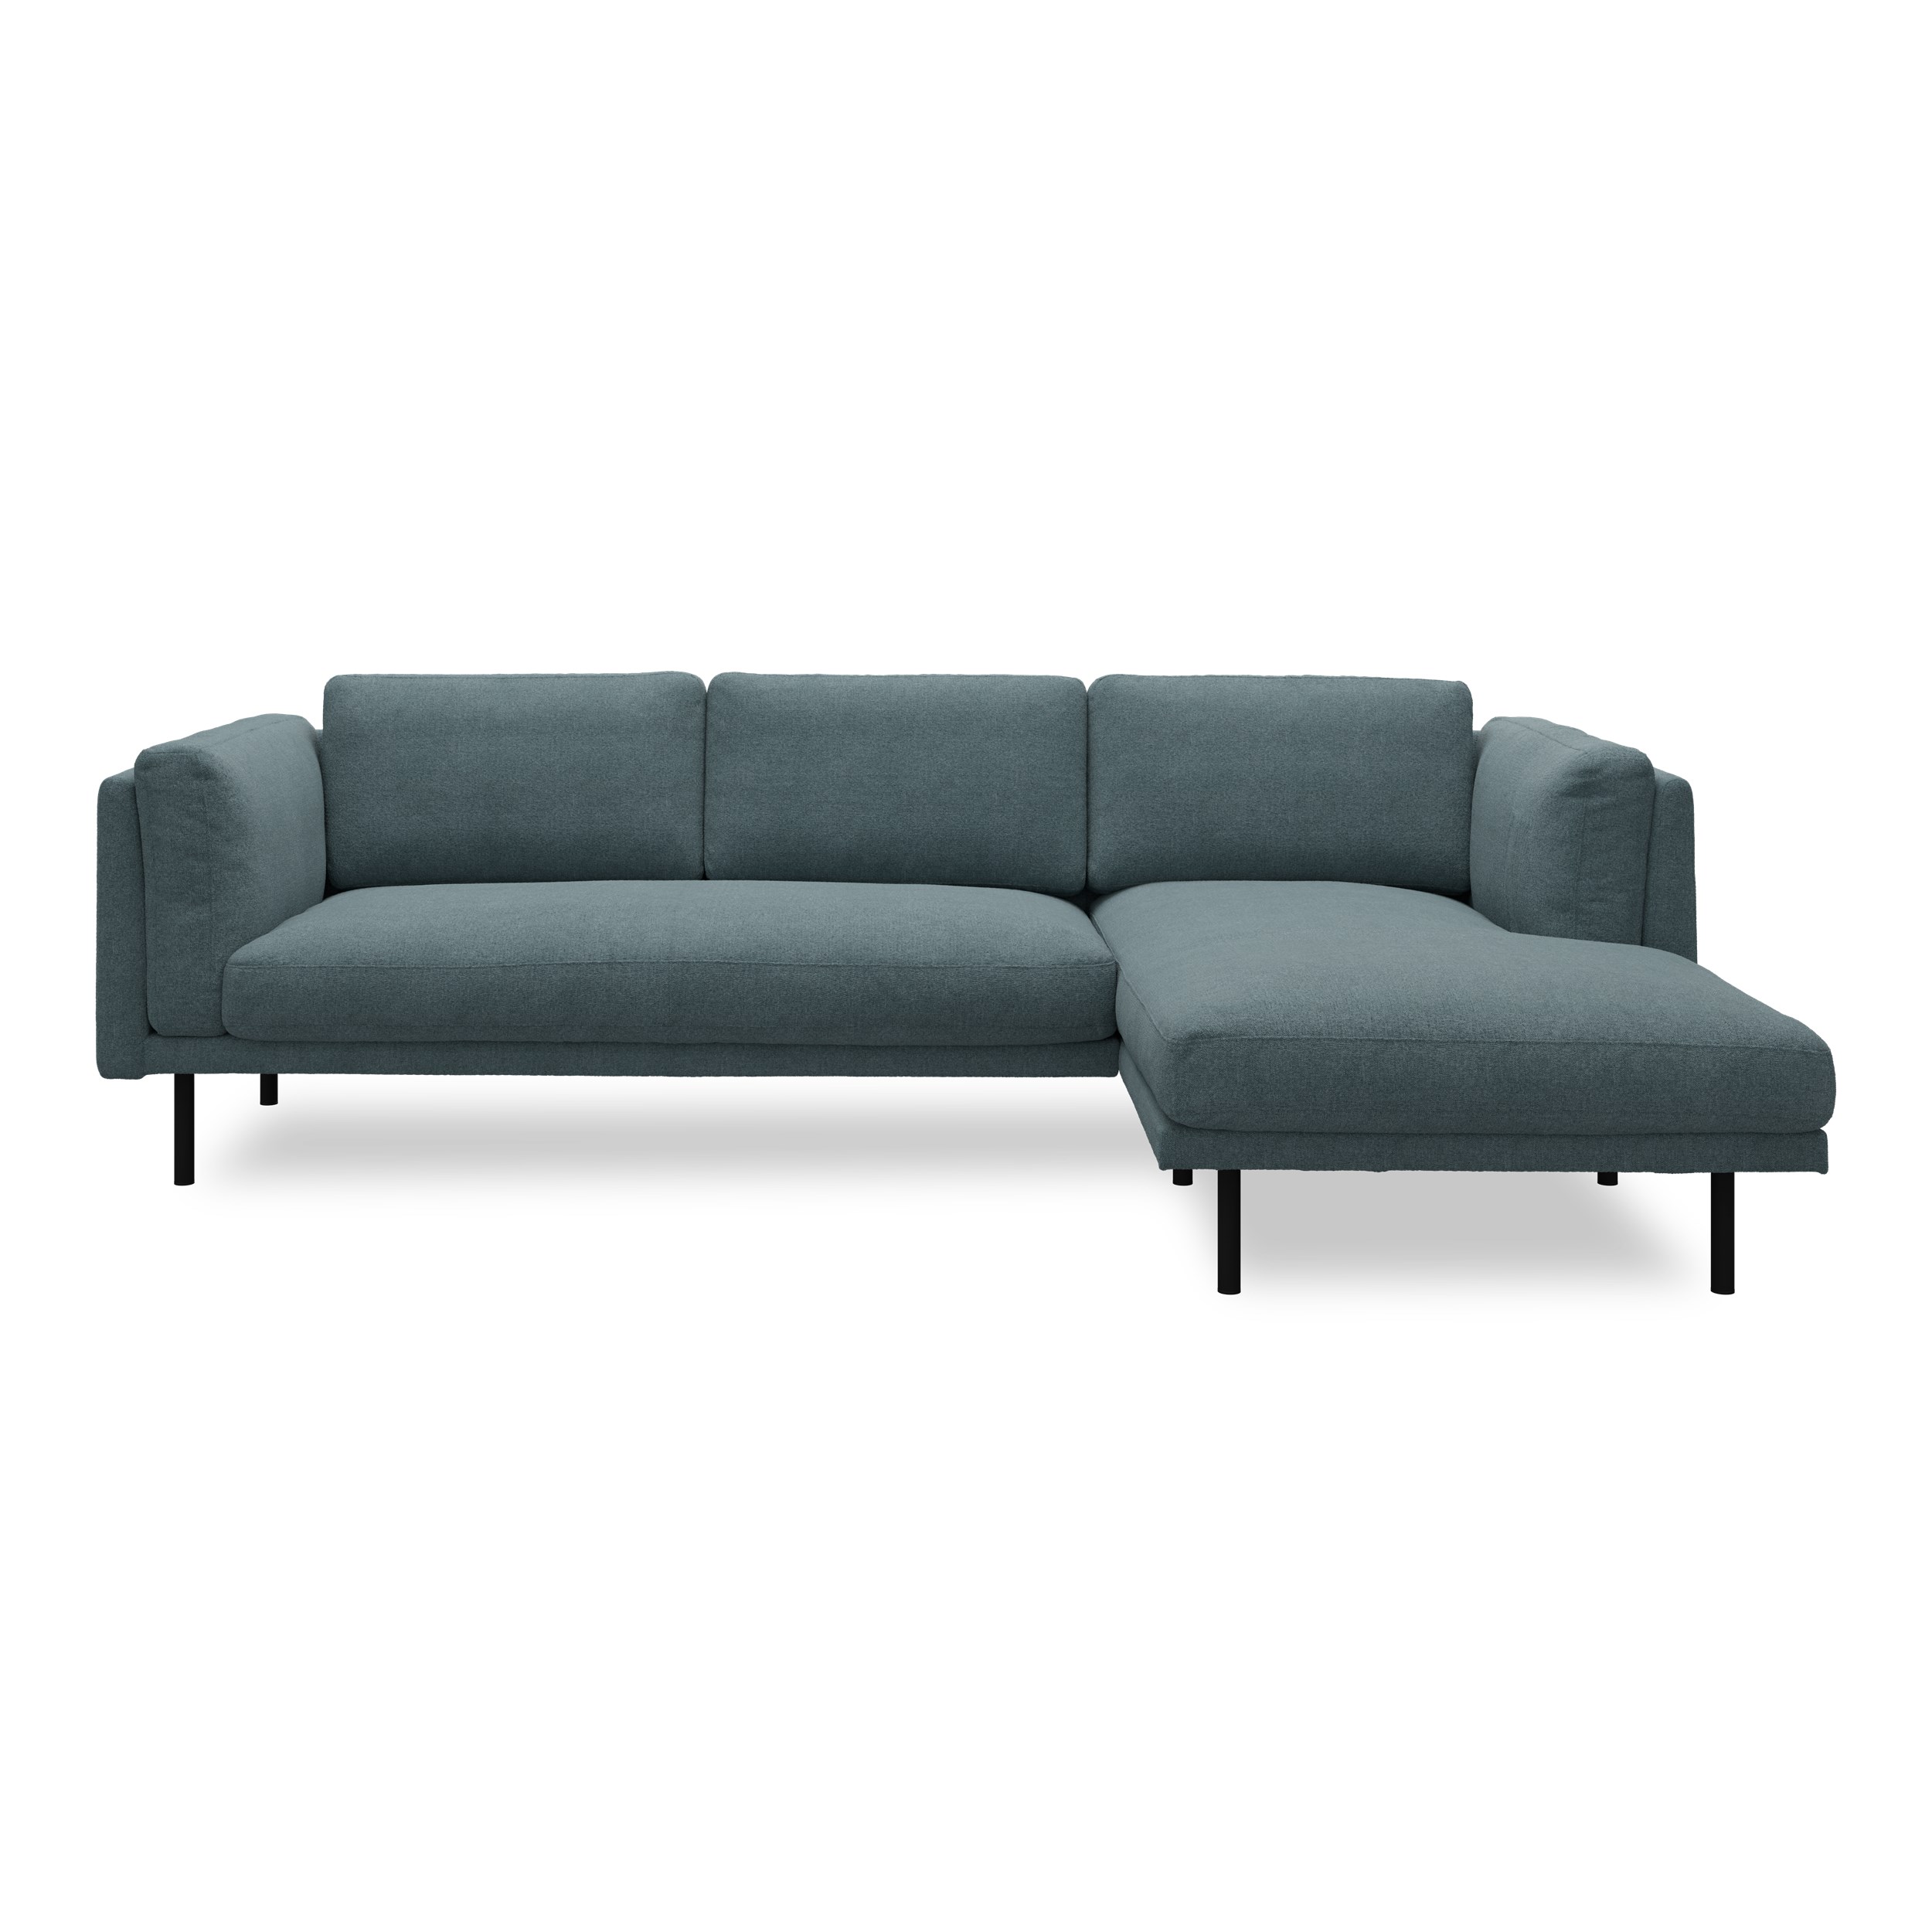 Nebel högervänd soffa med schäslong - Soil 90 Indigo textil och svart pulverlackerad metall